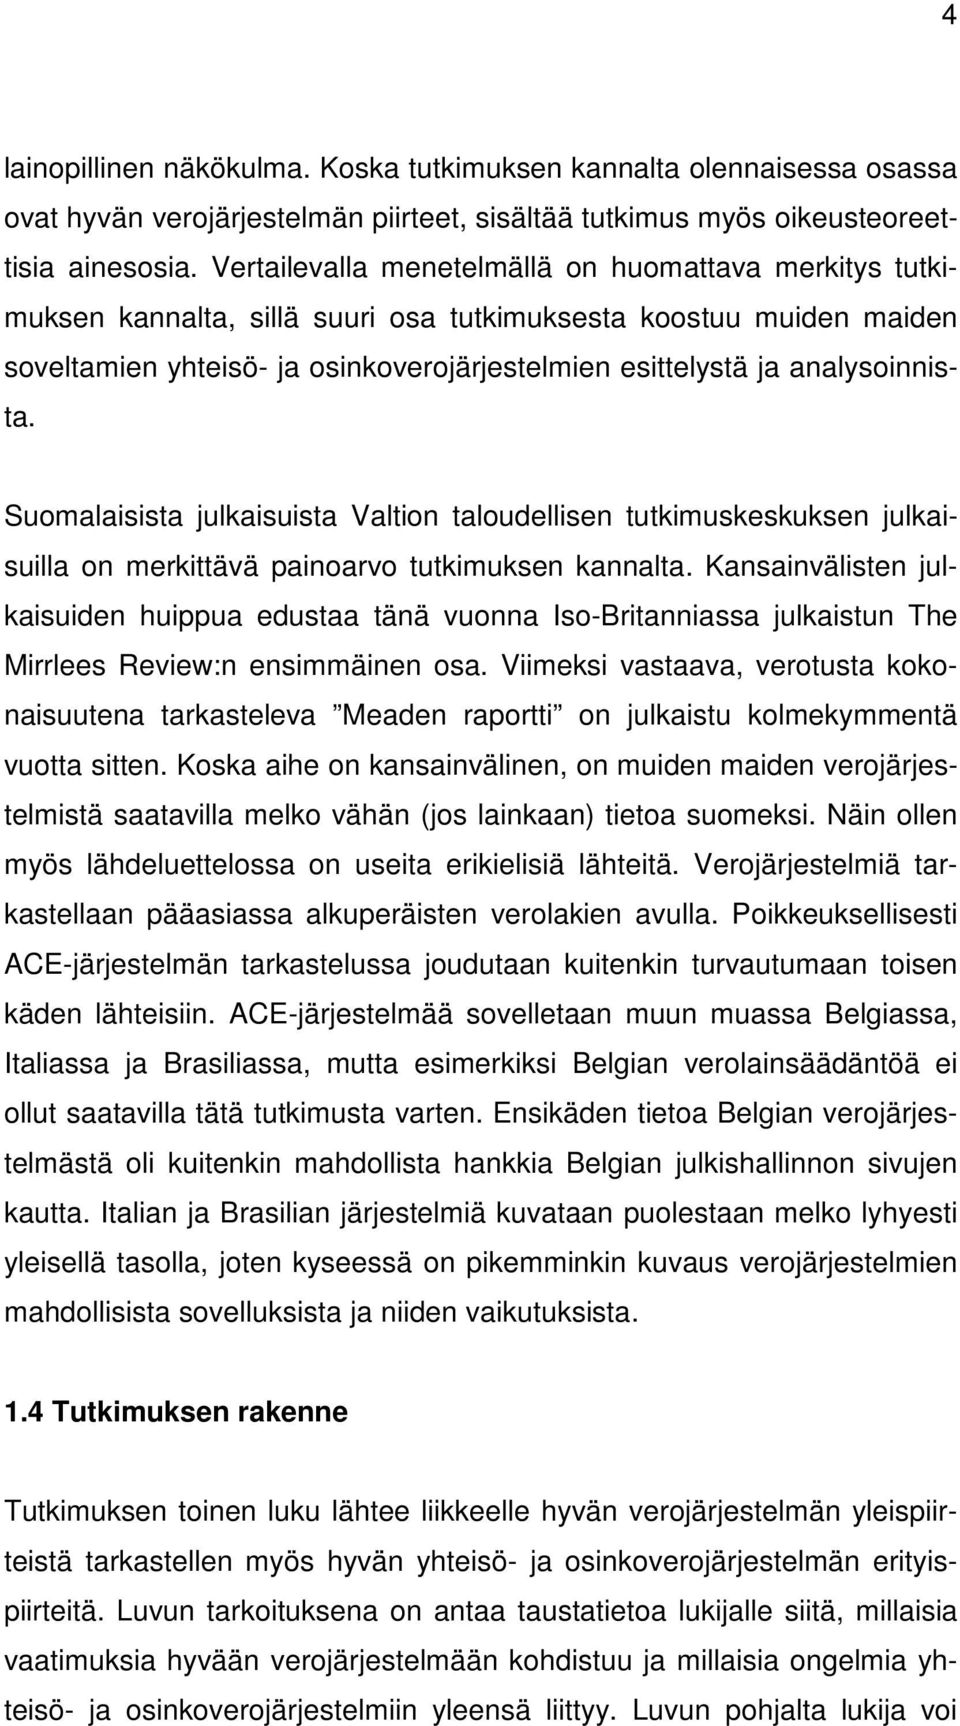 analysoinnista. Suomalaisista julkaisuista Valtion taloudellisen tutkimuskeskuksen julkaisuilla on merkittävä painoarvo tutkimuksen kannalta.